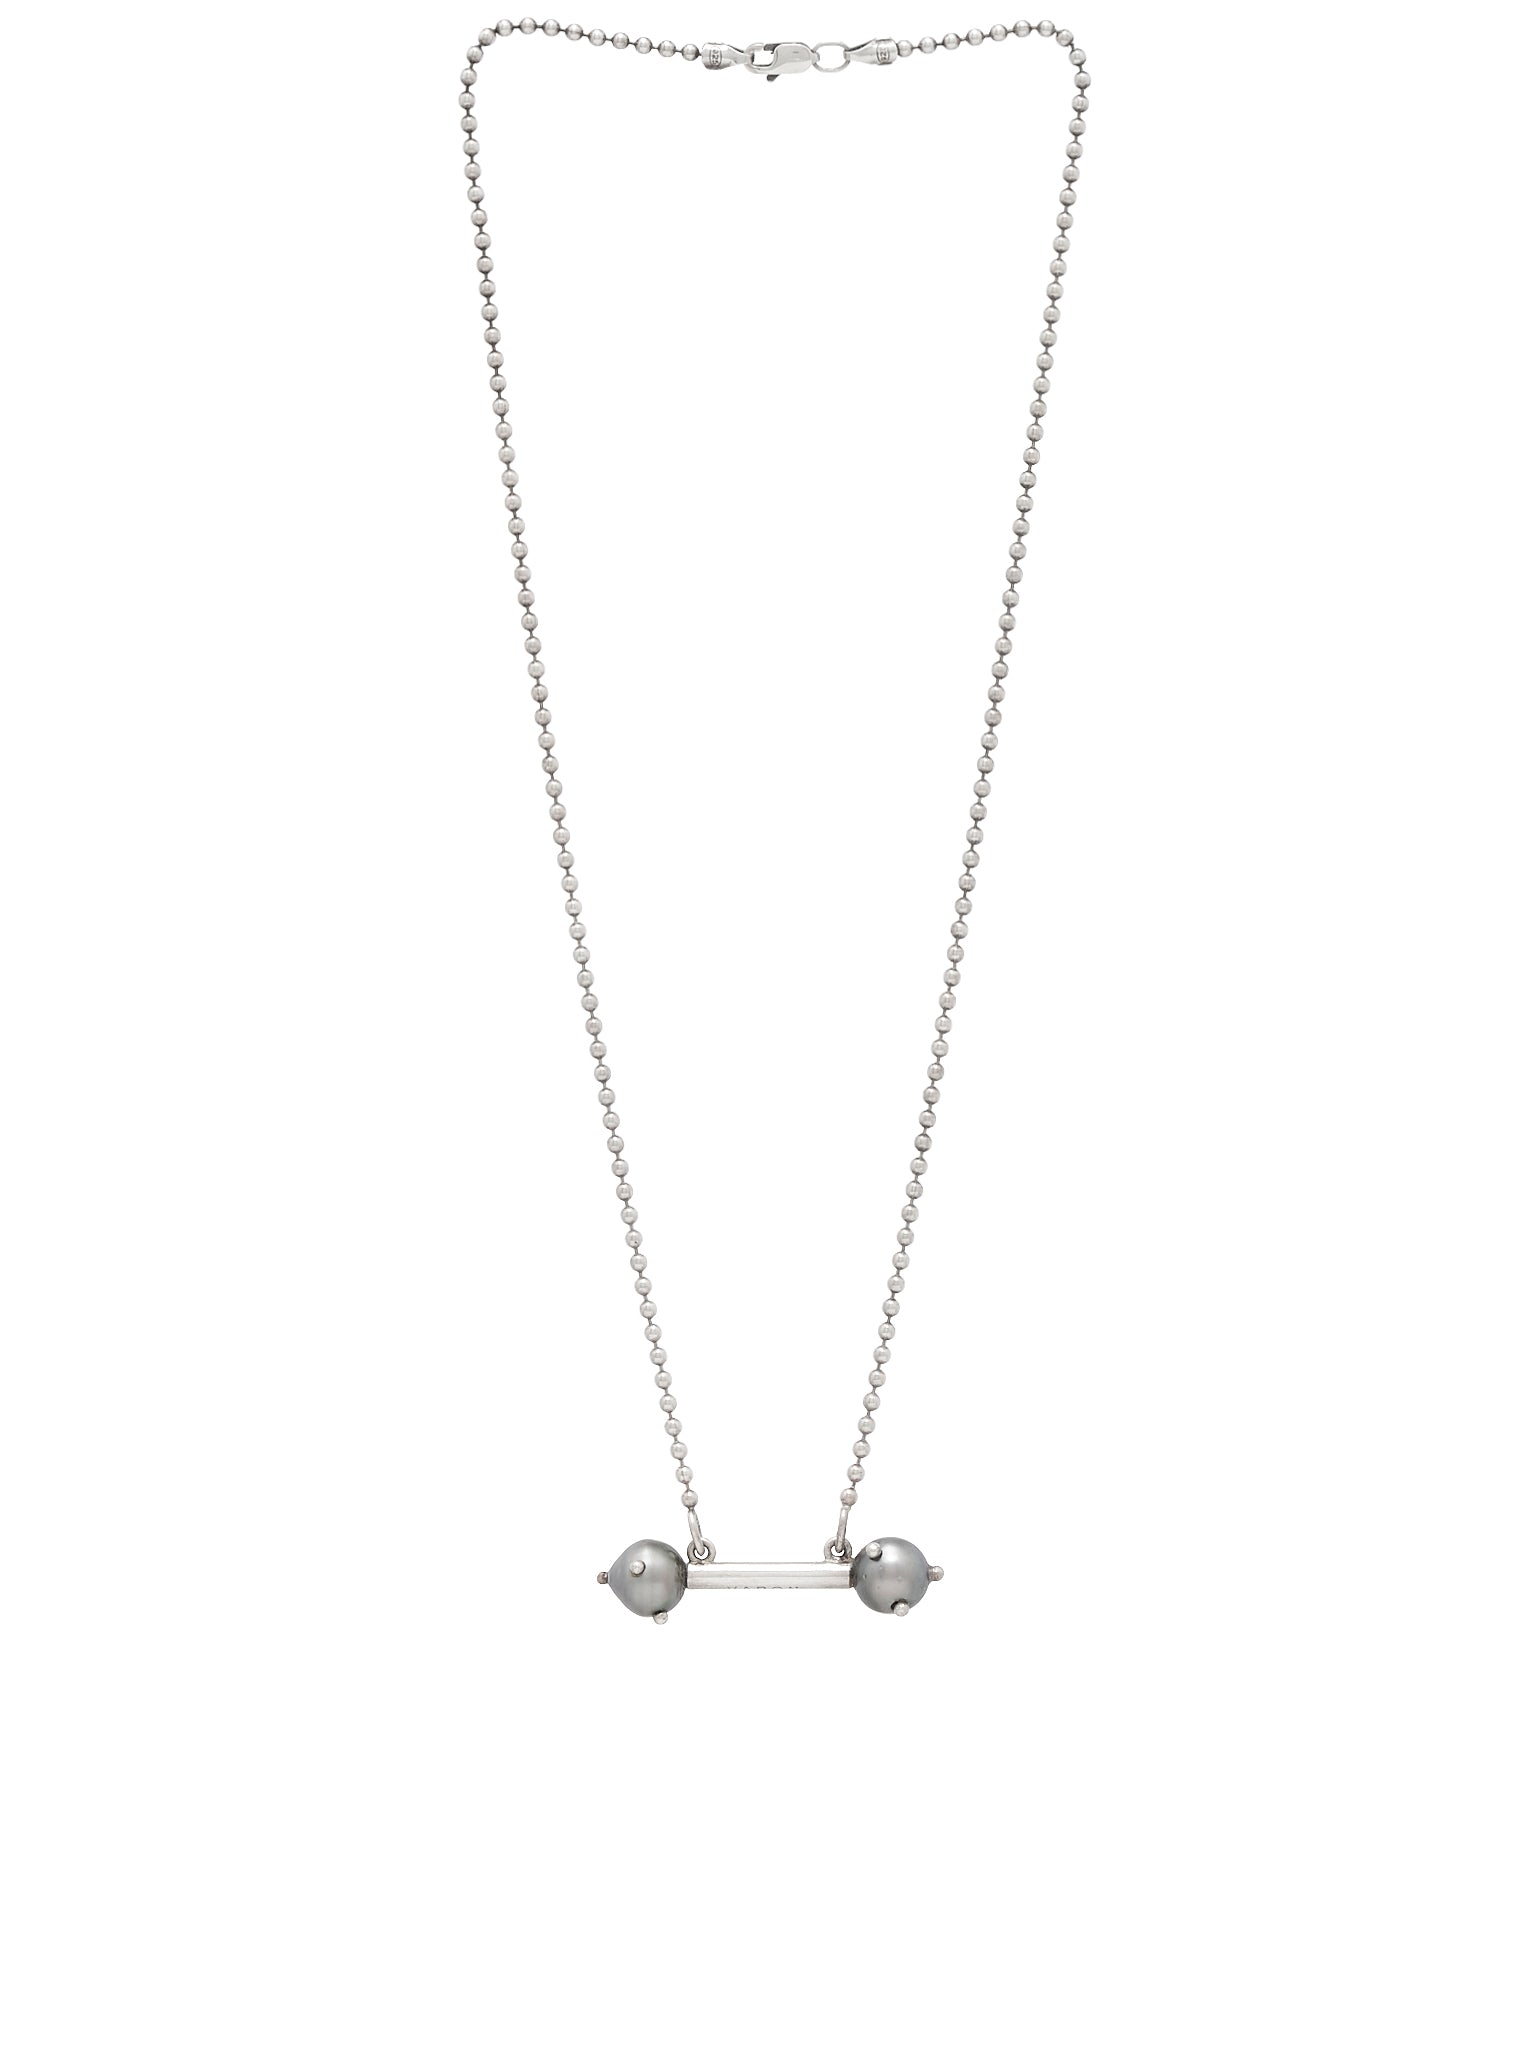 Grey Pearl Percing Necklace (PERLA-PIERCING-GREY-PEARL)